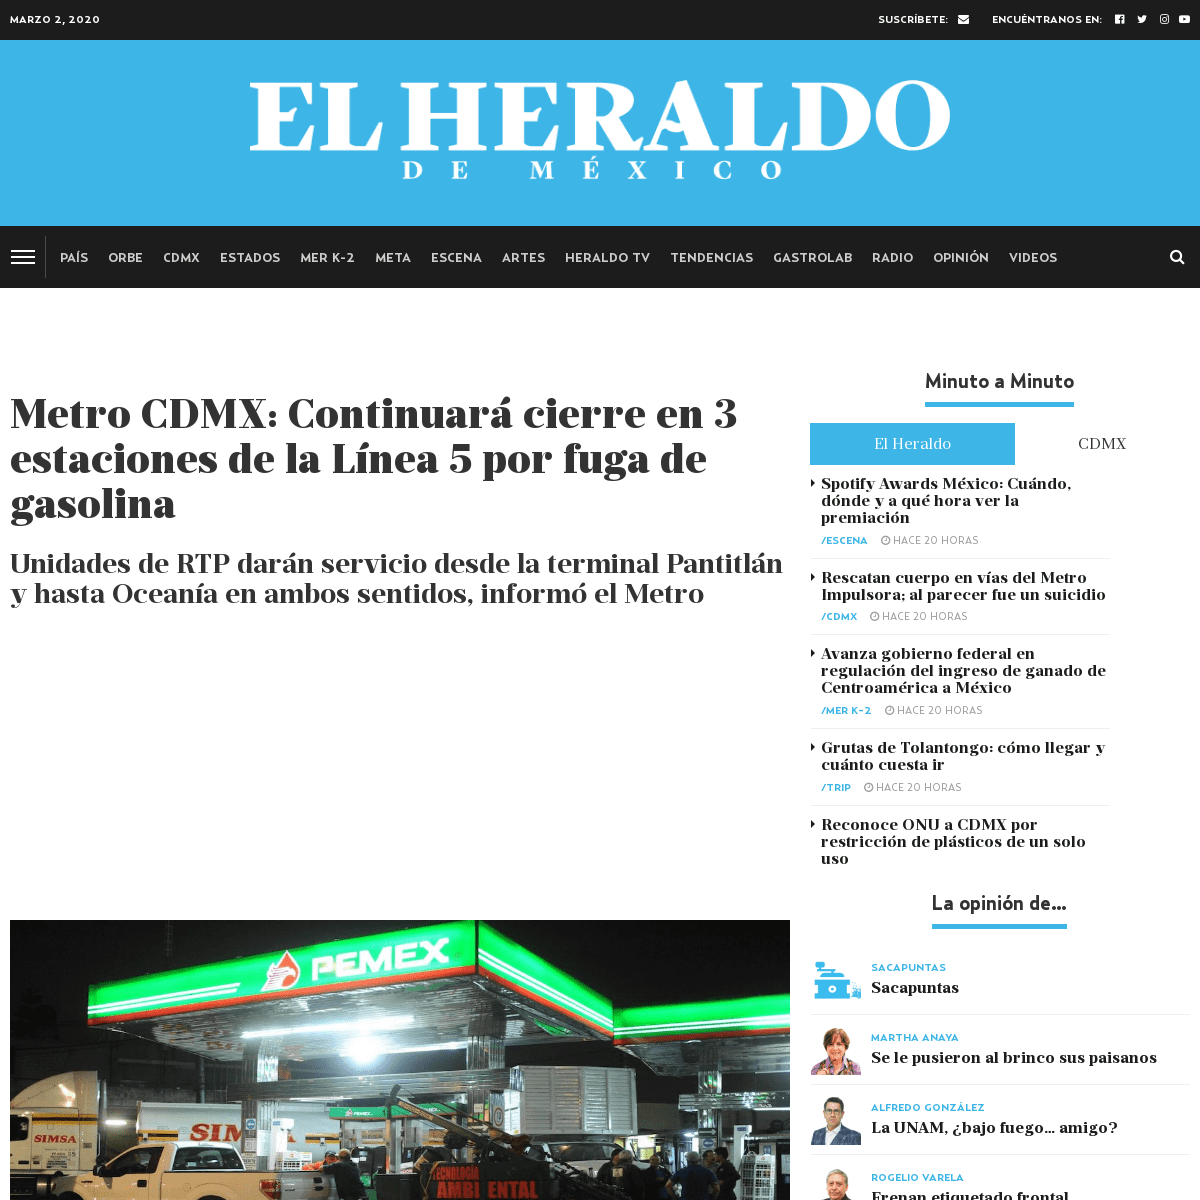 A complete backup of heraldodemexico.com.mx/cdmx/metro-cdmx-martes-3-marzo-seguiran-cerradas-estaciones-pantitlan-hangares-termi